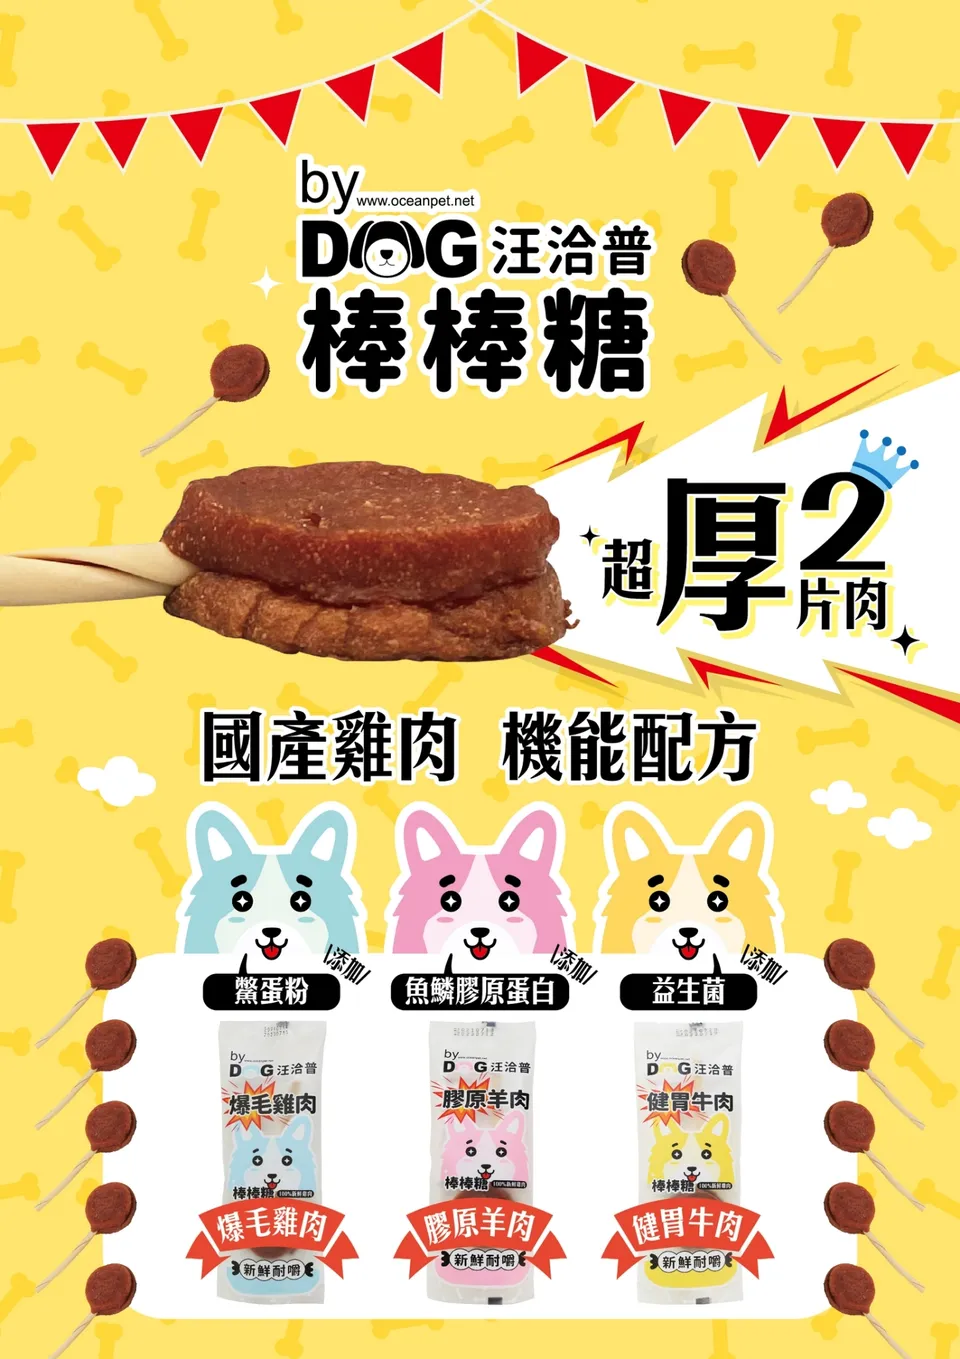 汪洽普 by dog 雙層棒棒糖 20g (三種口味選擇)